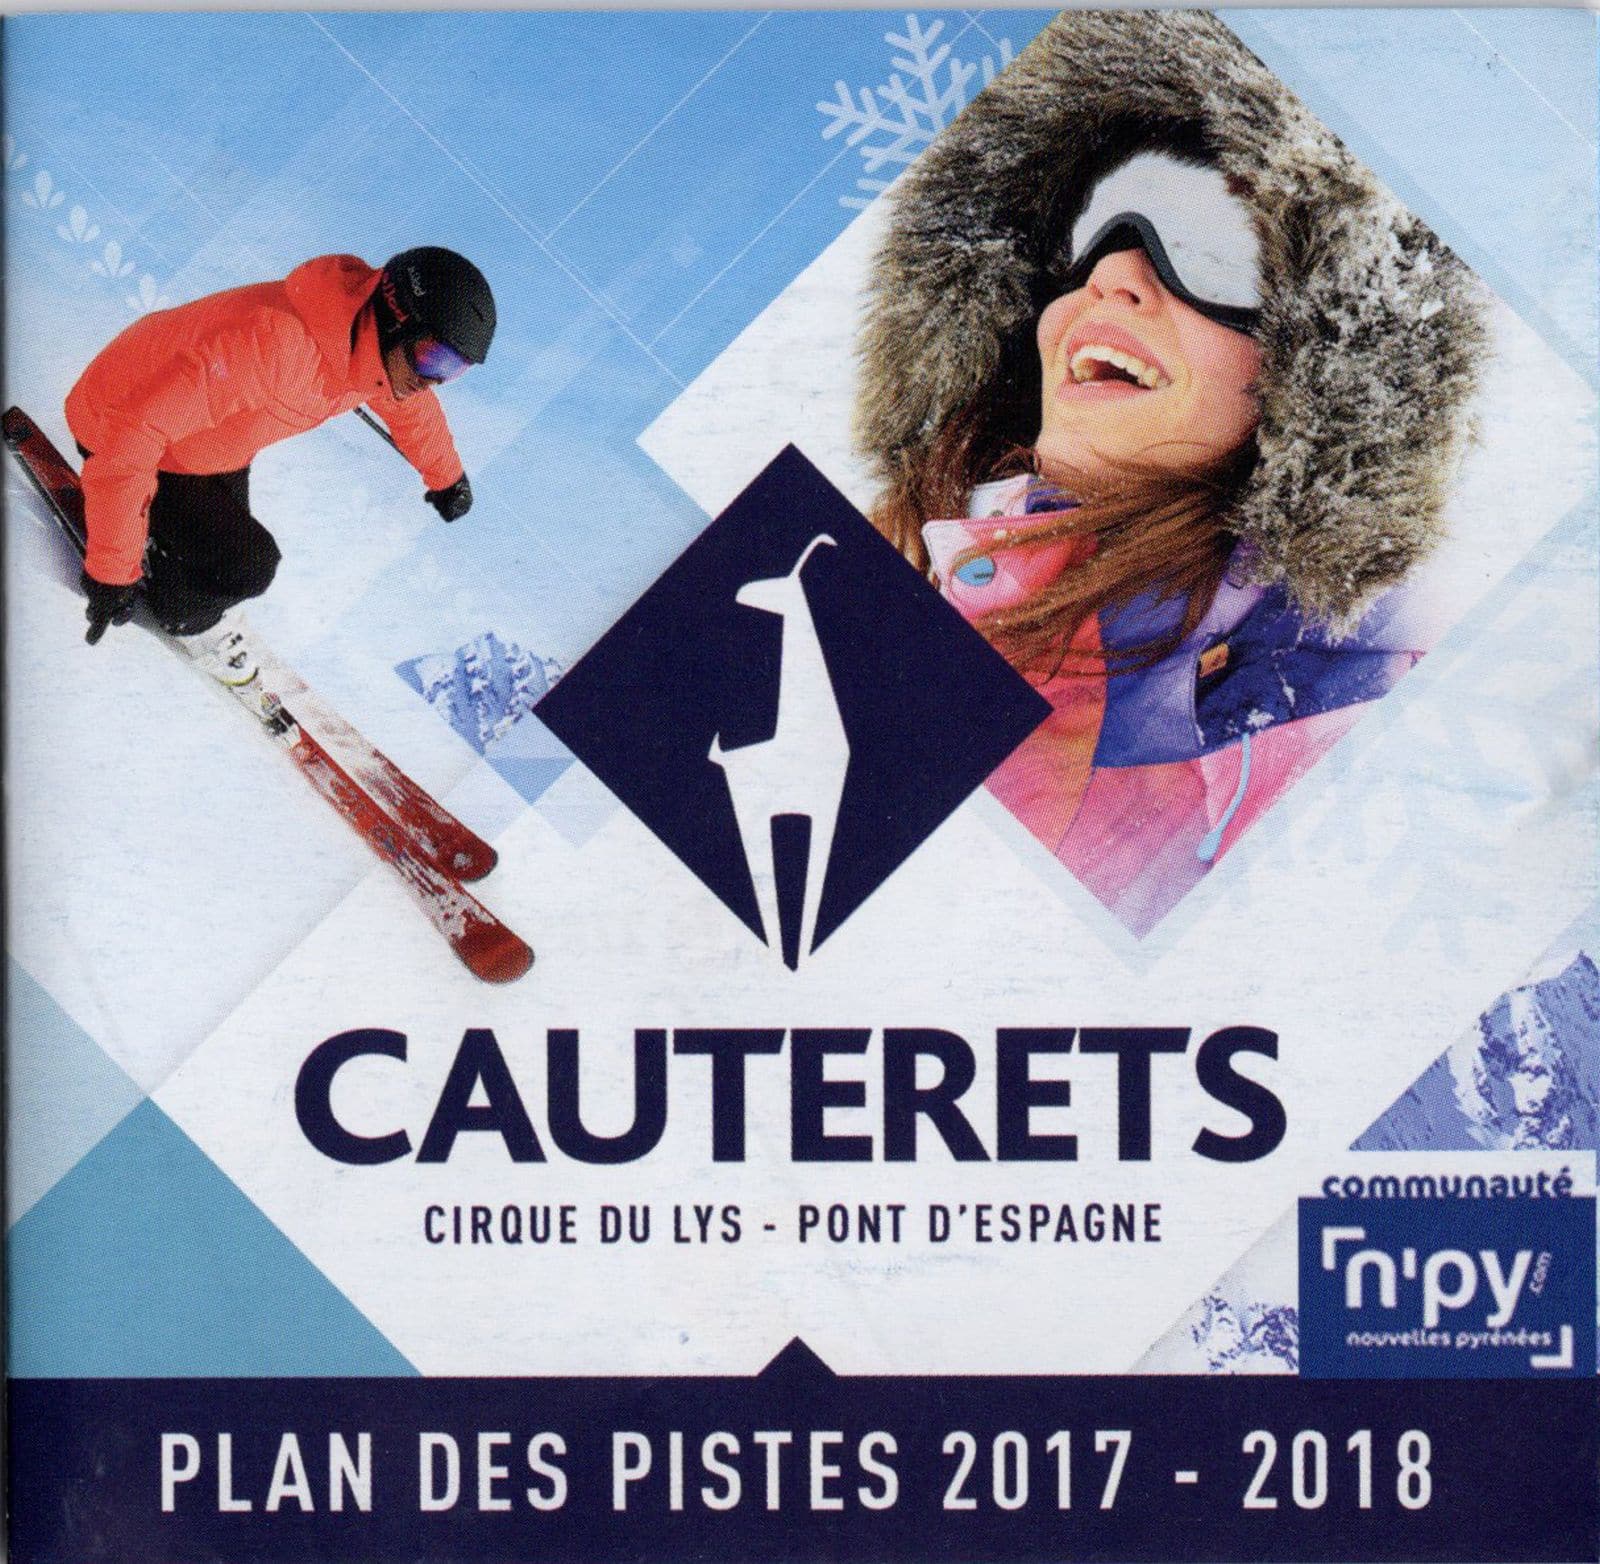 Le forfait de ski de la Station Cauterets - Cirque du Lys - Pont d'Espagne réalisé avec une image de l'Agence Urope